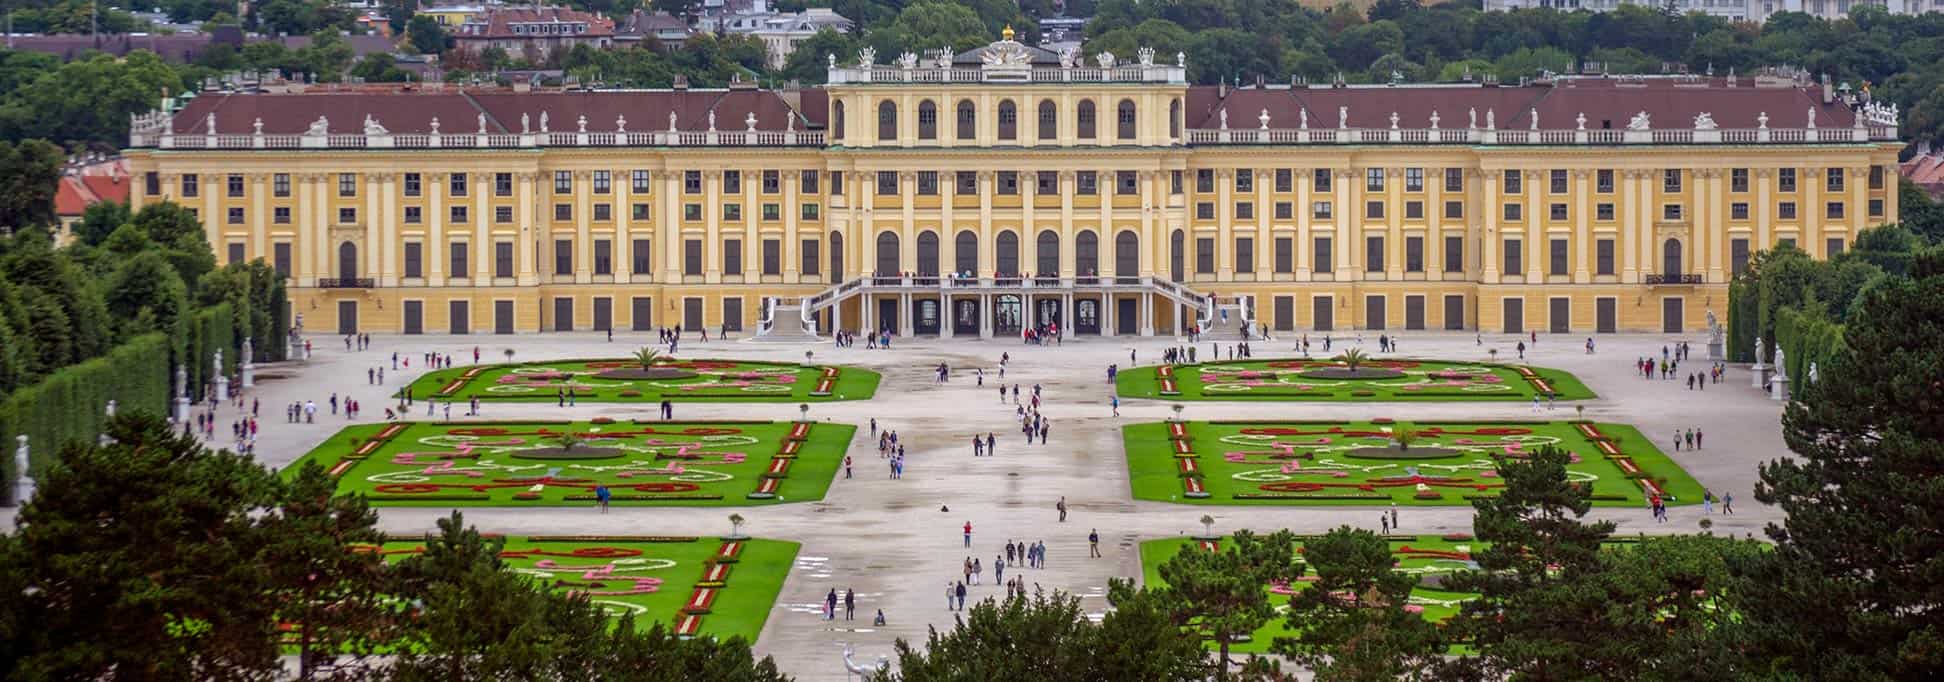 قصر شونبرون فيينا